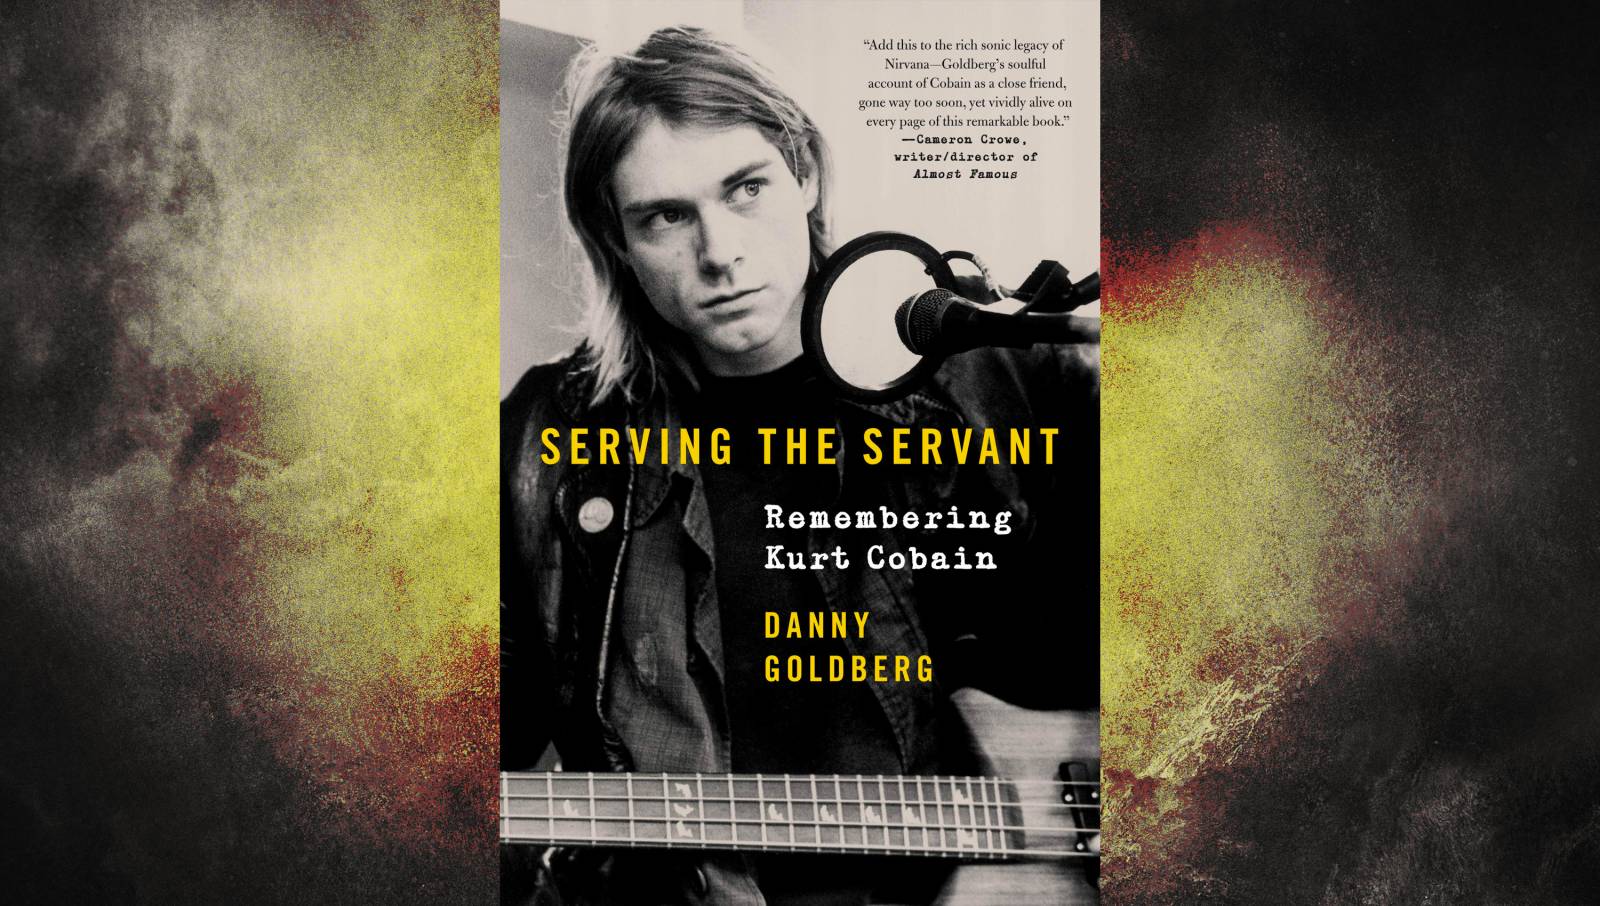 Manažer Nirvany napsal k výročí pětadvaceti let od smrti Kurta Cobaina knihu plnou pikantních historek